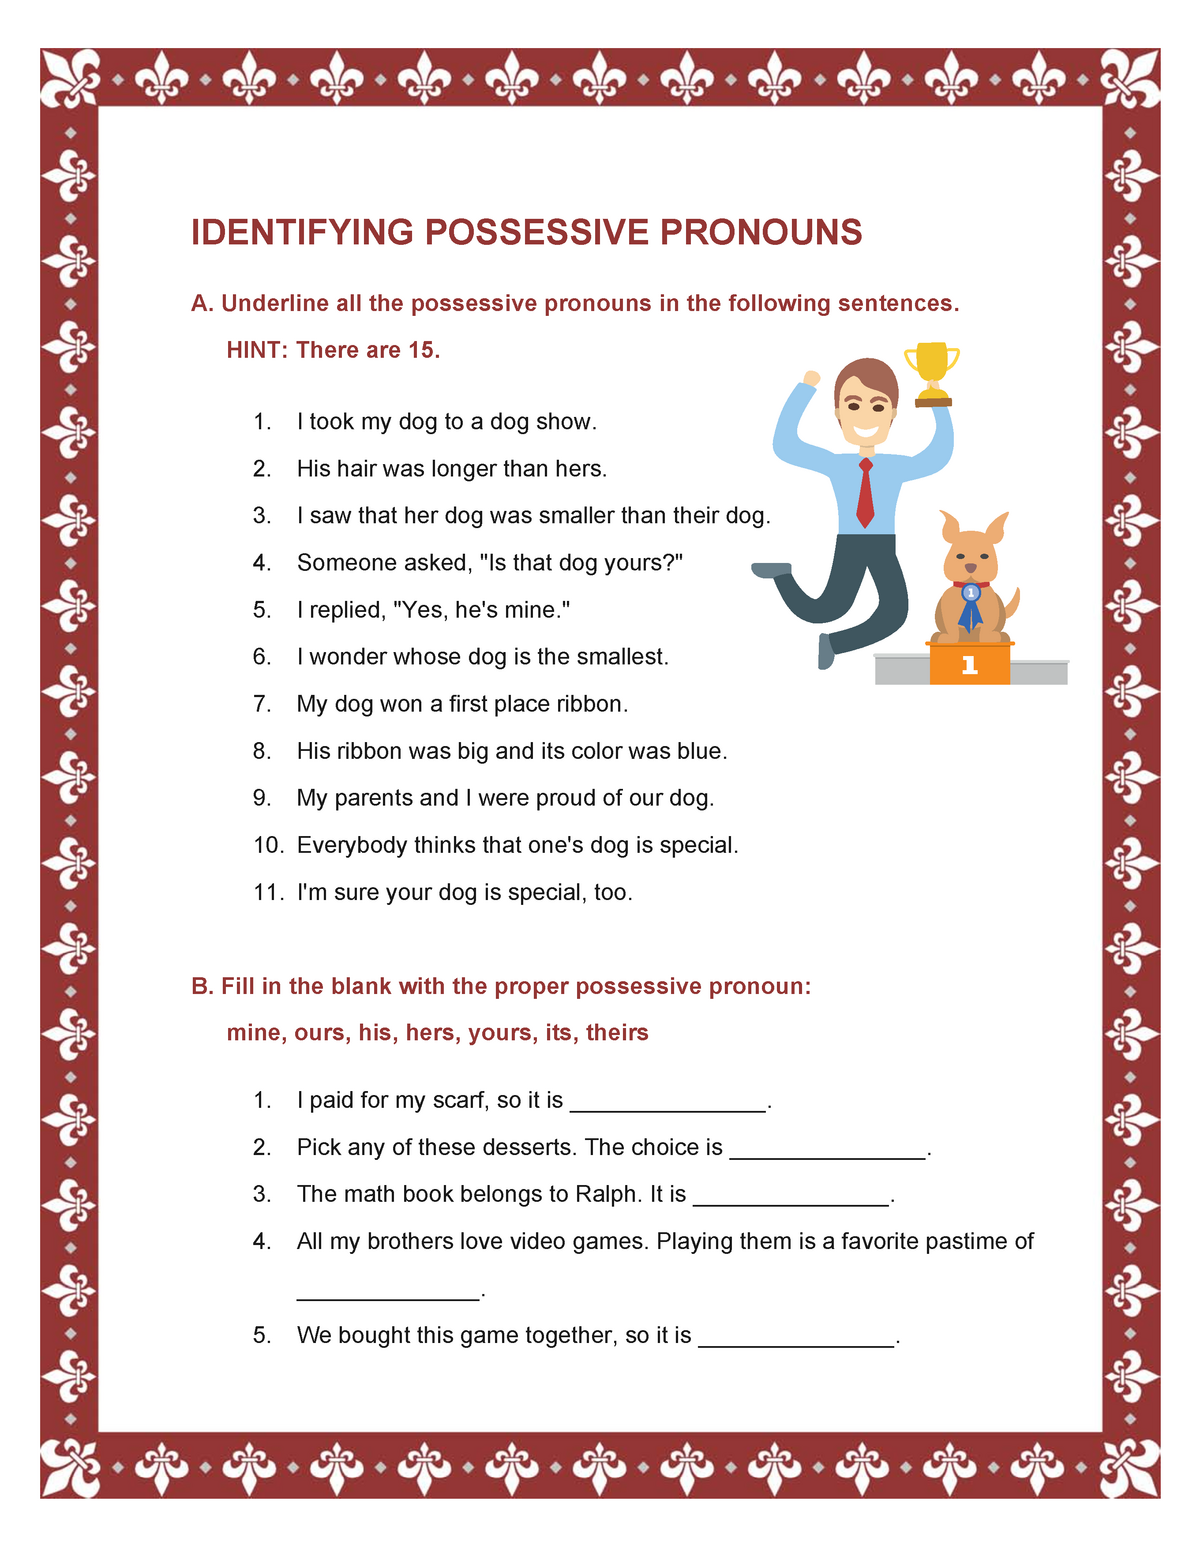 identifying-possessive-pronouns-worksheet-identifying-possessive